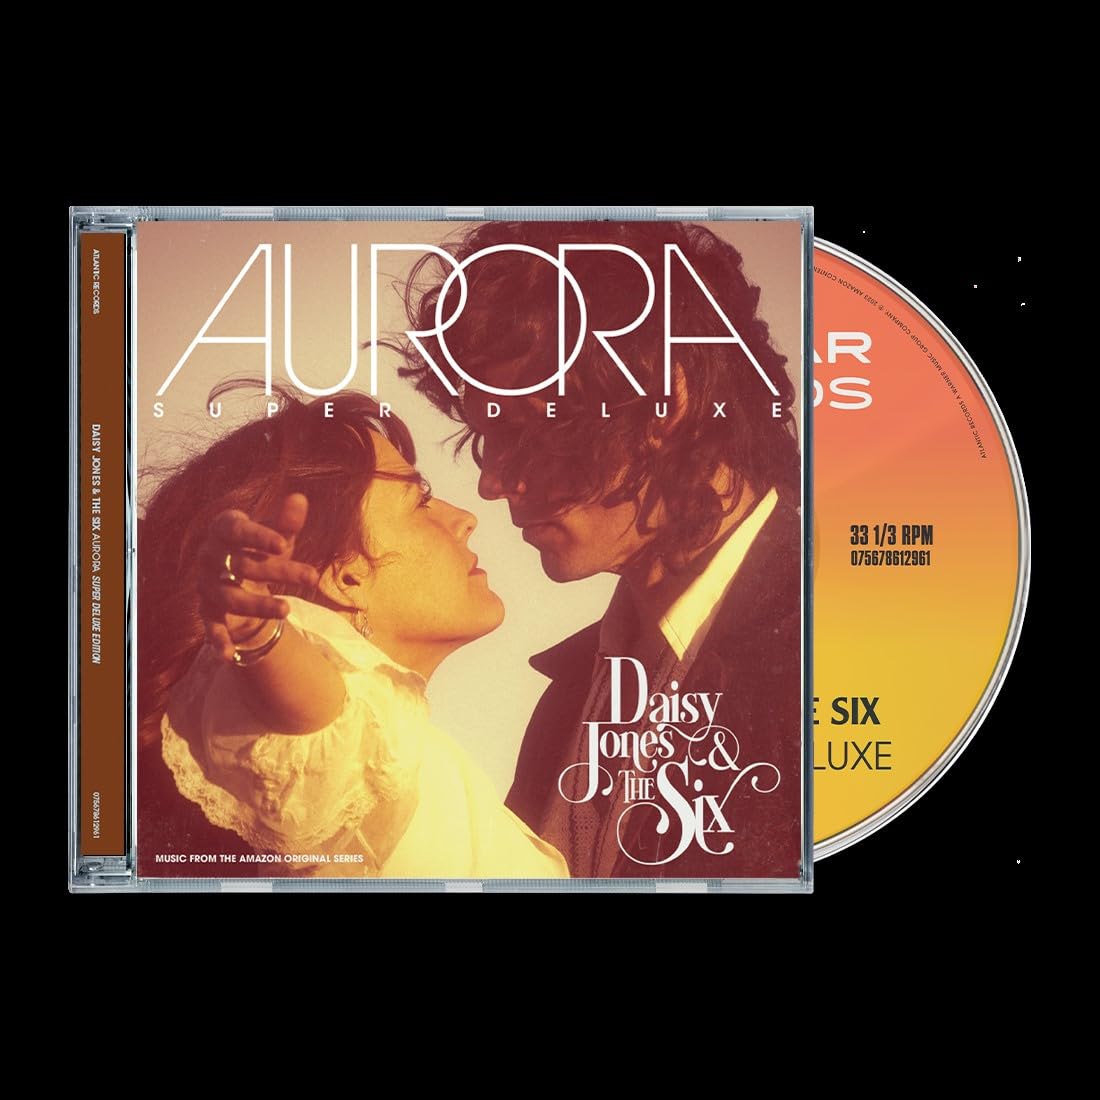 AURORA (Super Deluxe)